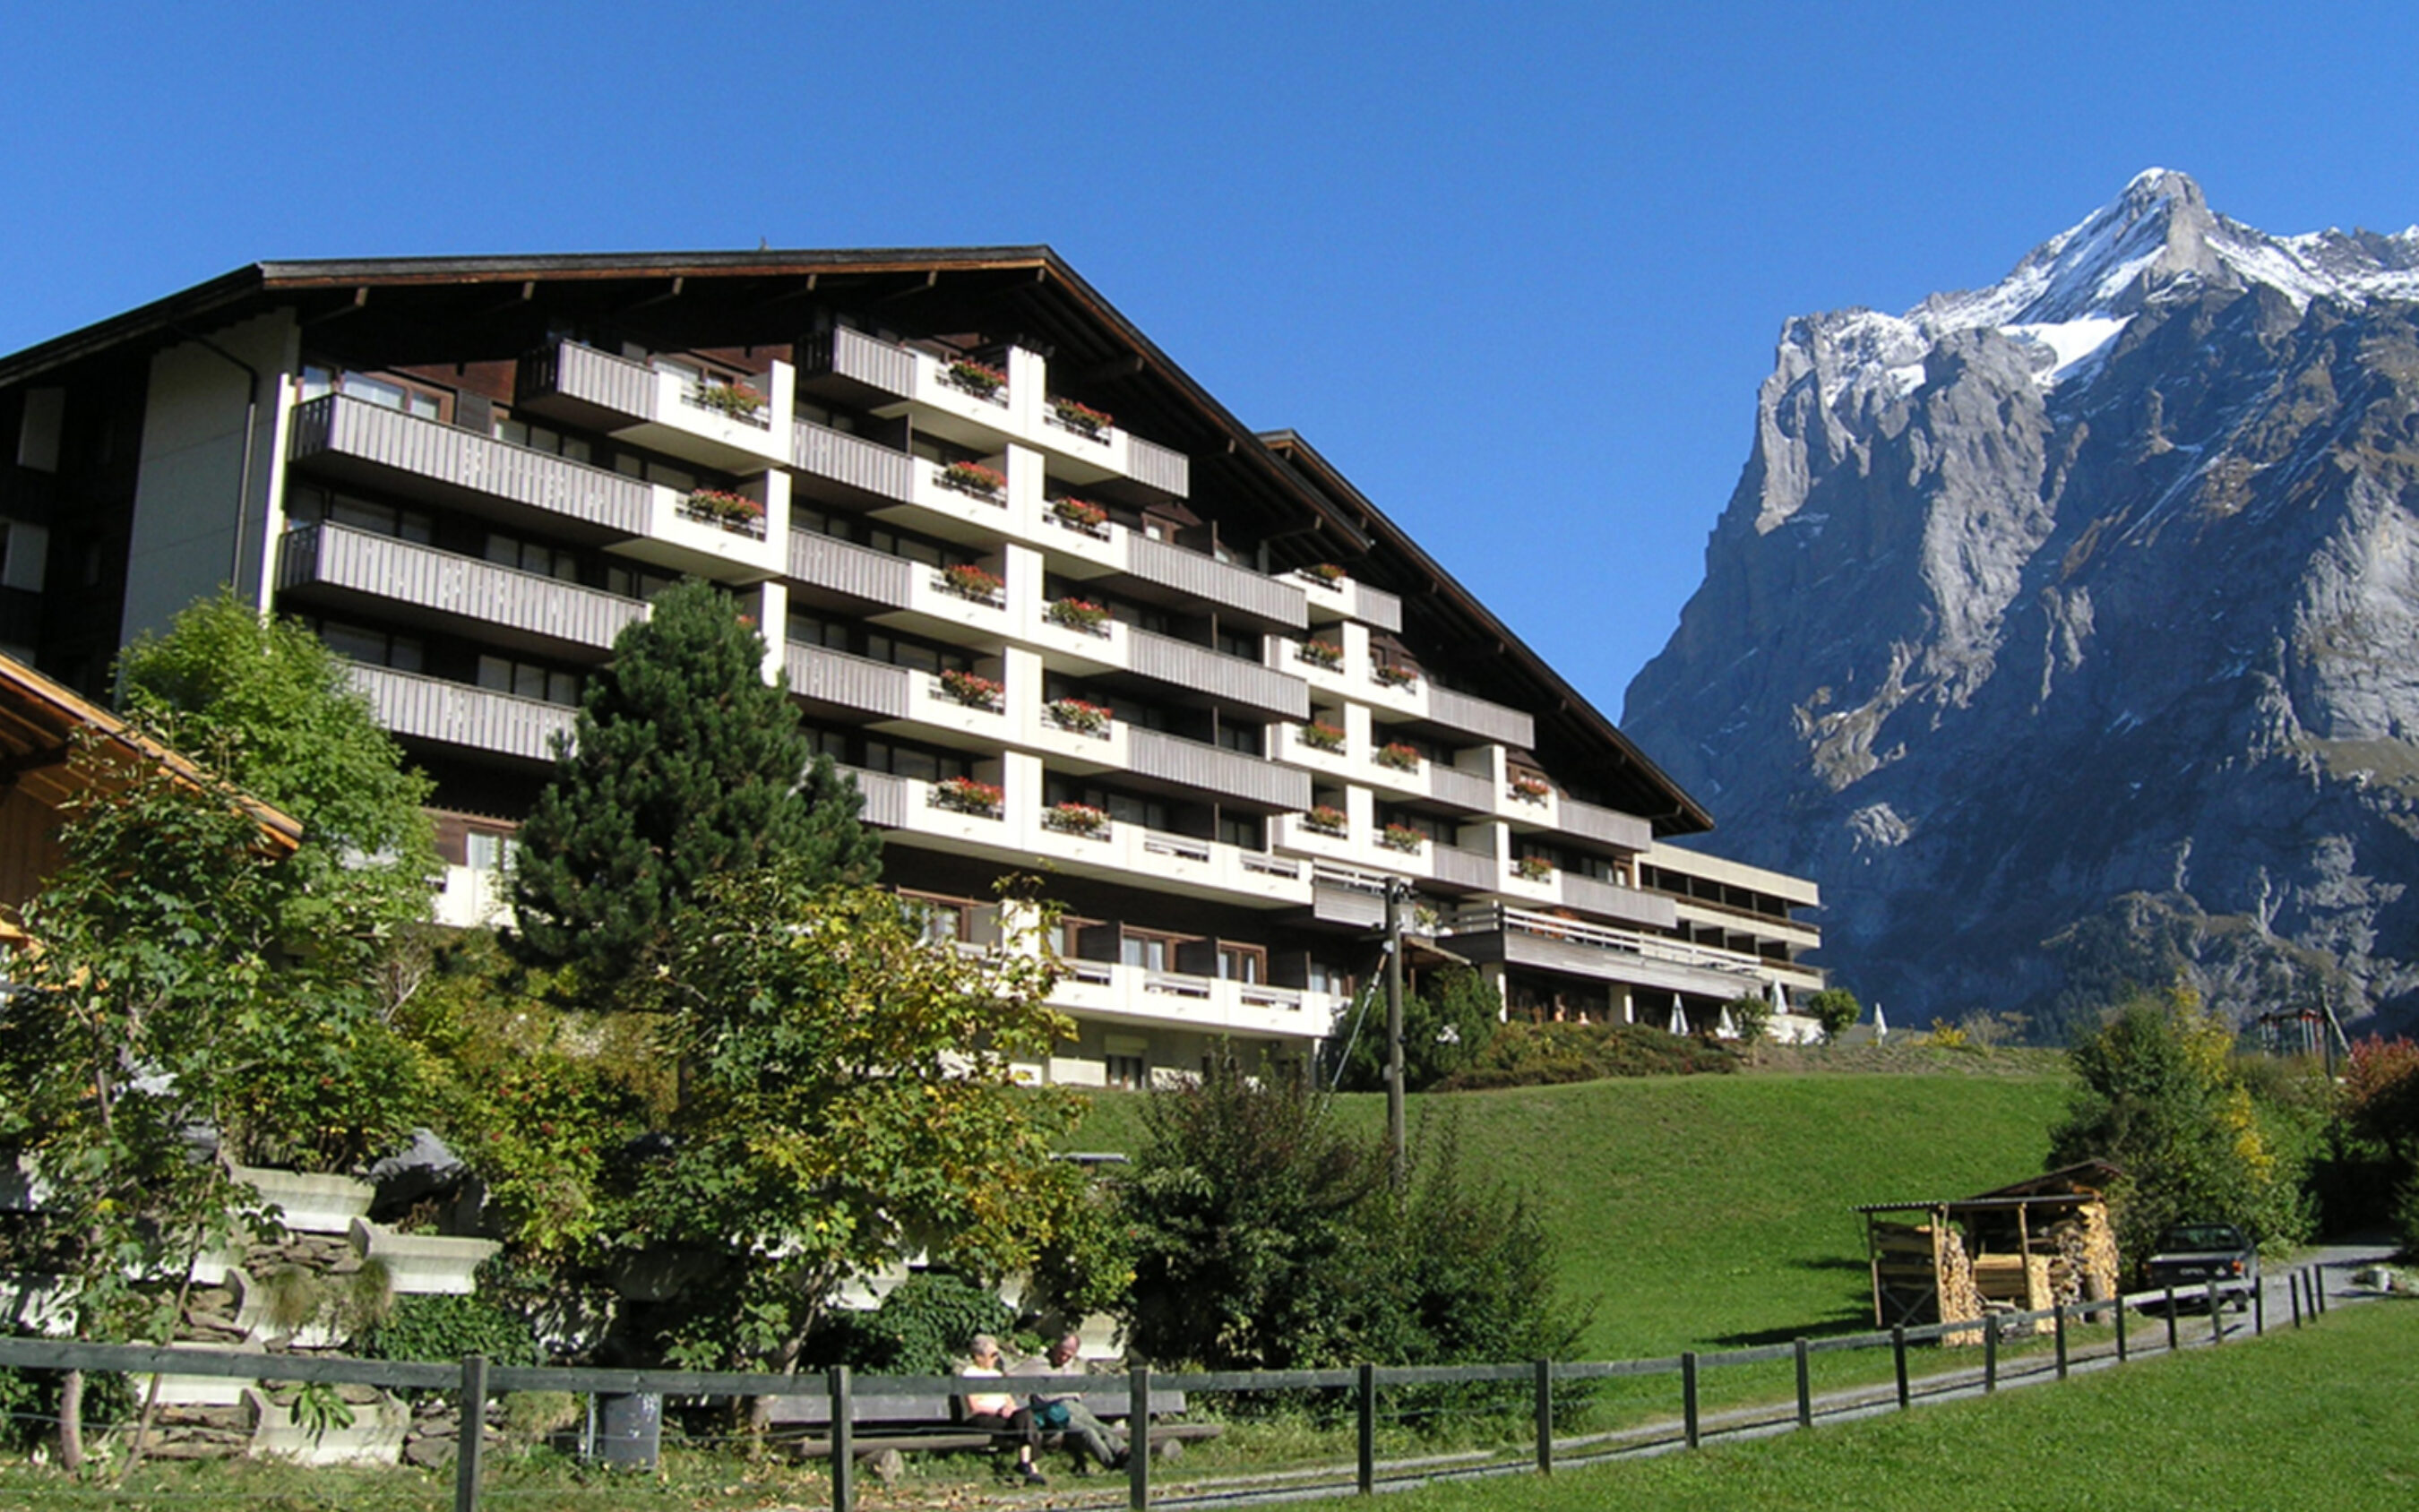 Grindelwald sunstar hotelbooker 03